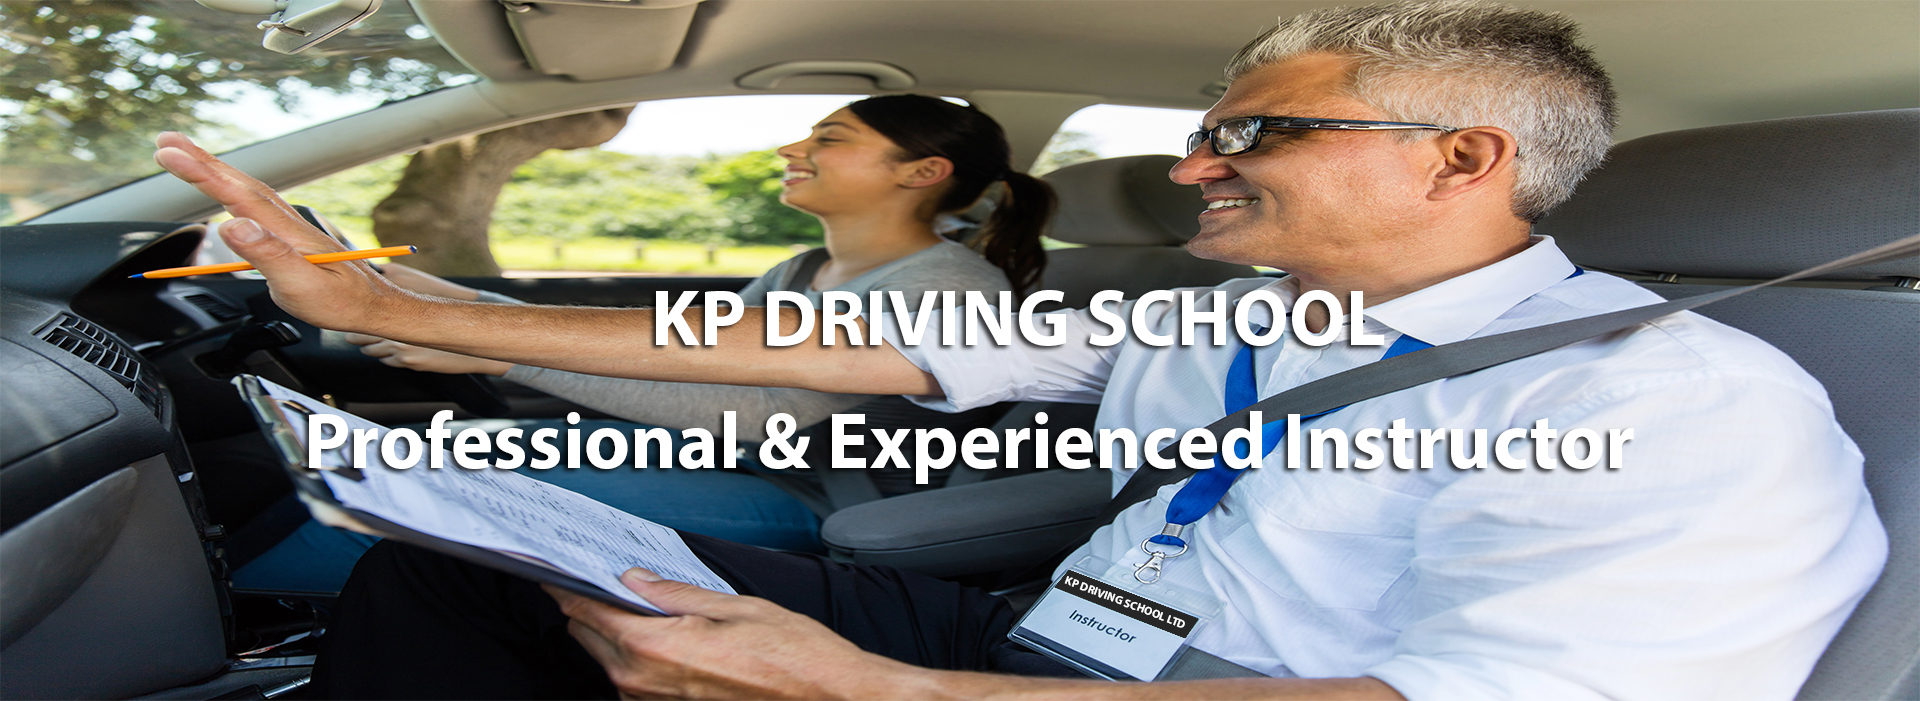 KP Driving School Surrey Slide3.jpg